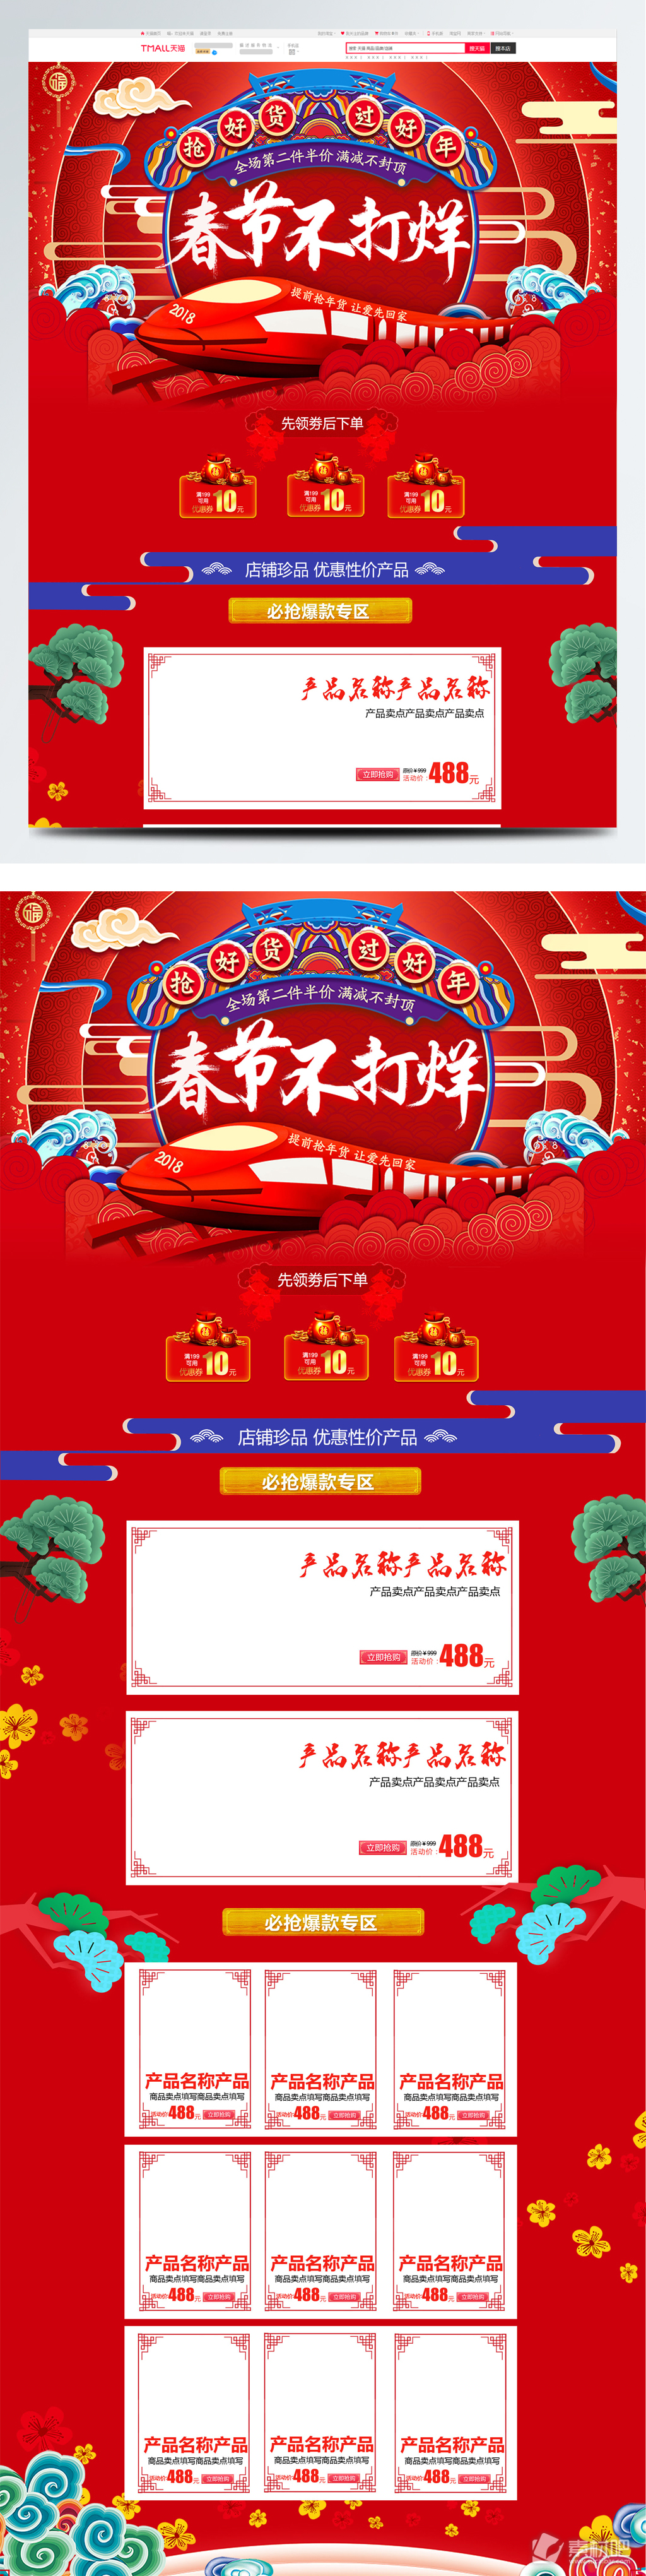 红色喜庆春节不打烊豆浆机首页促销模板